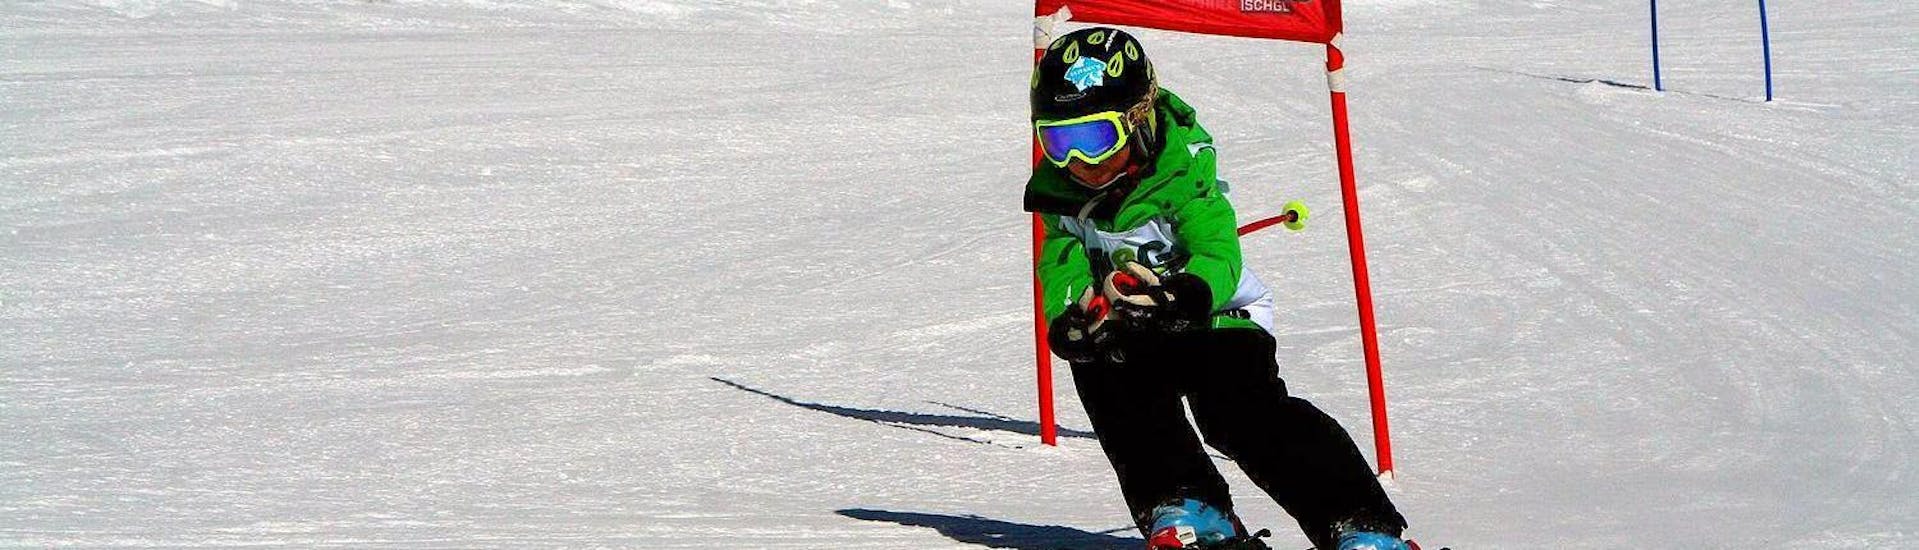 Un jeune enfant dévale une piste de course pendant l'un de ses cours de ski pour enfants (6-15 ans) - niveau expérimenté dans la station de ski d'Ischgl.